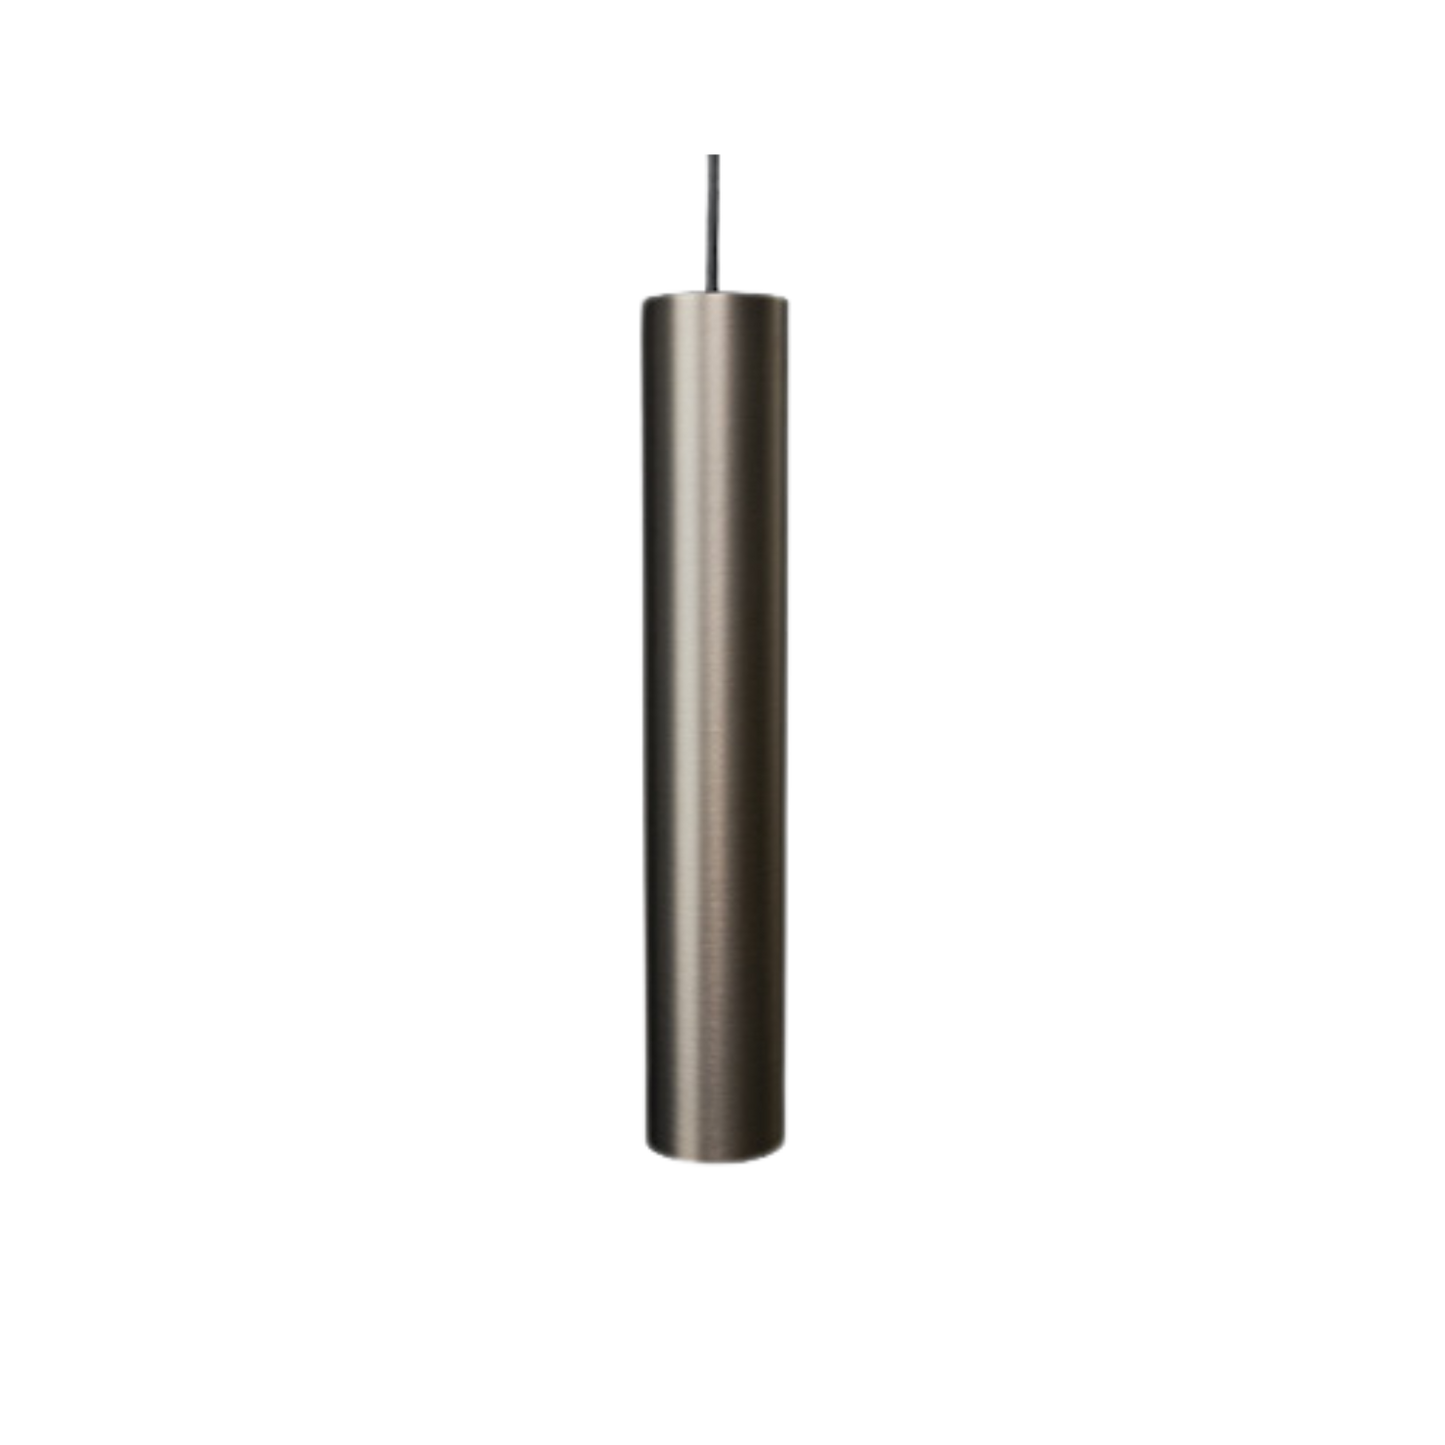 ANTIDARK Designline tube flex Pendel L35 - Titanium